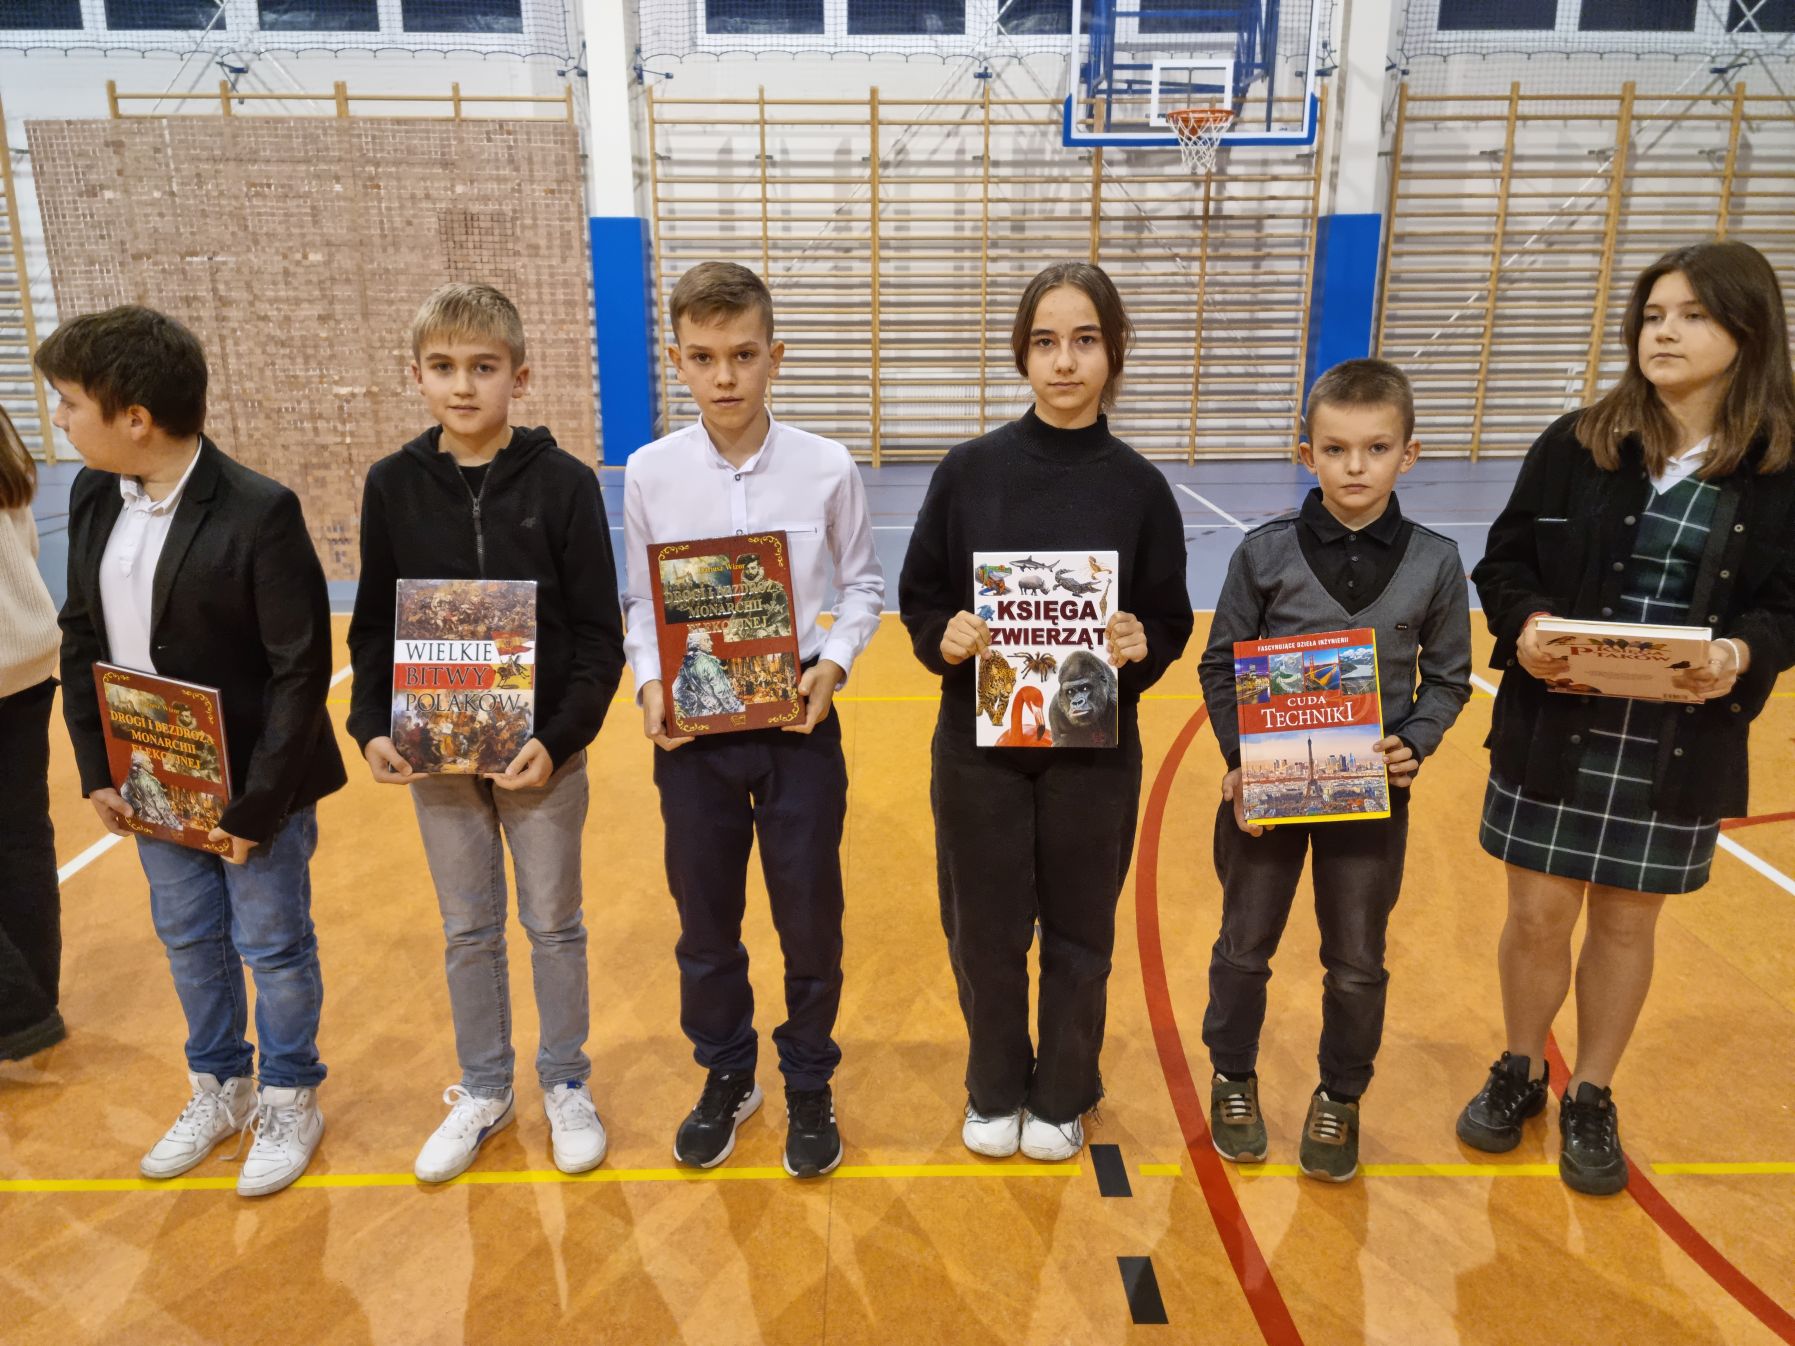 Grupa uczniów z nagrodami książkowymi